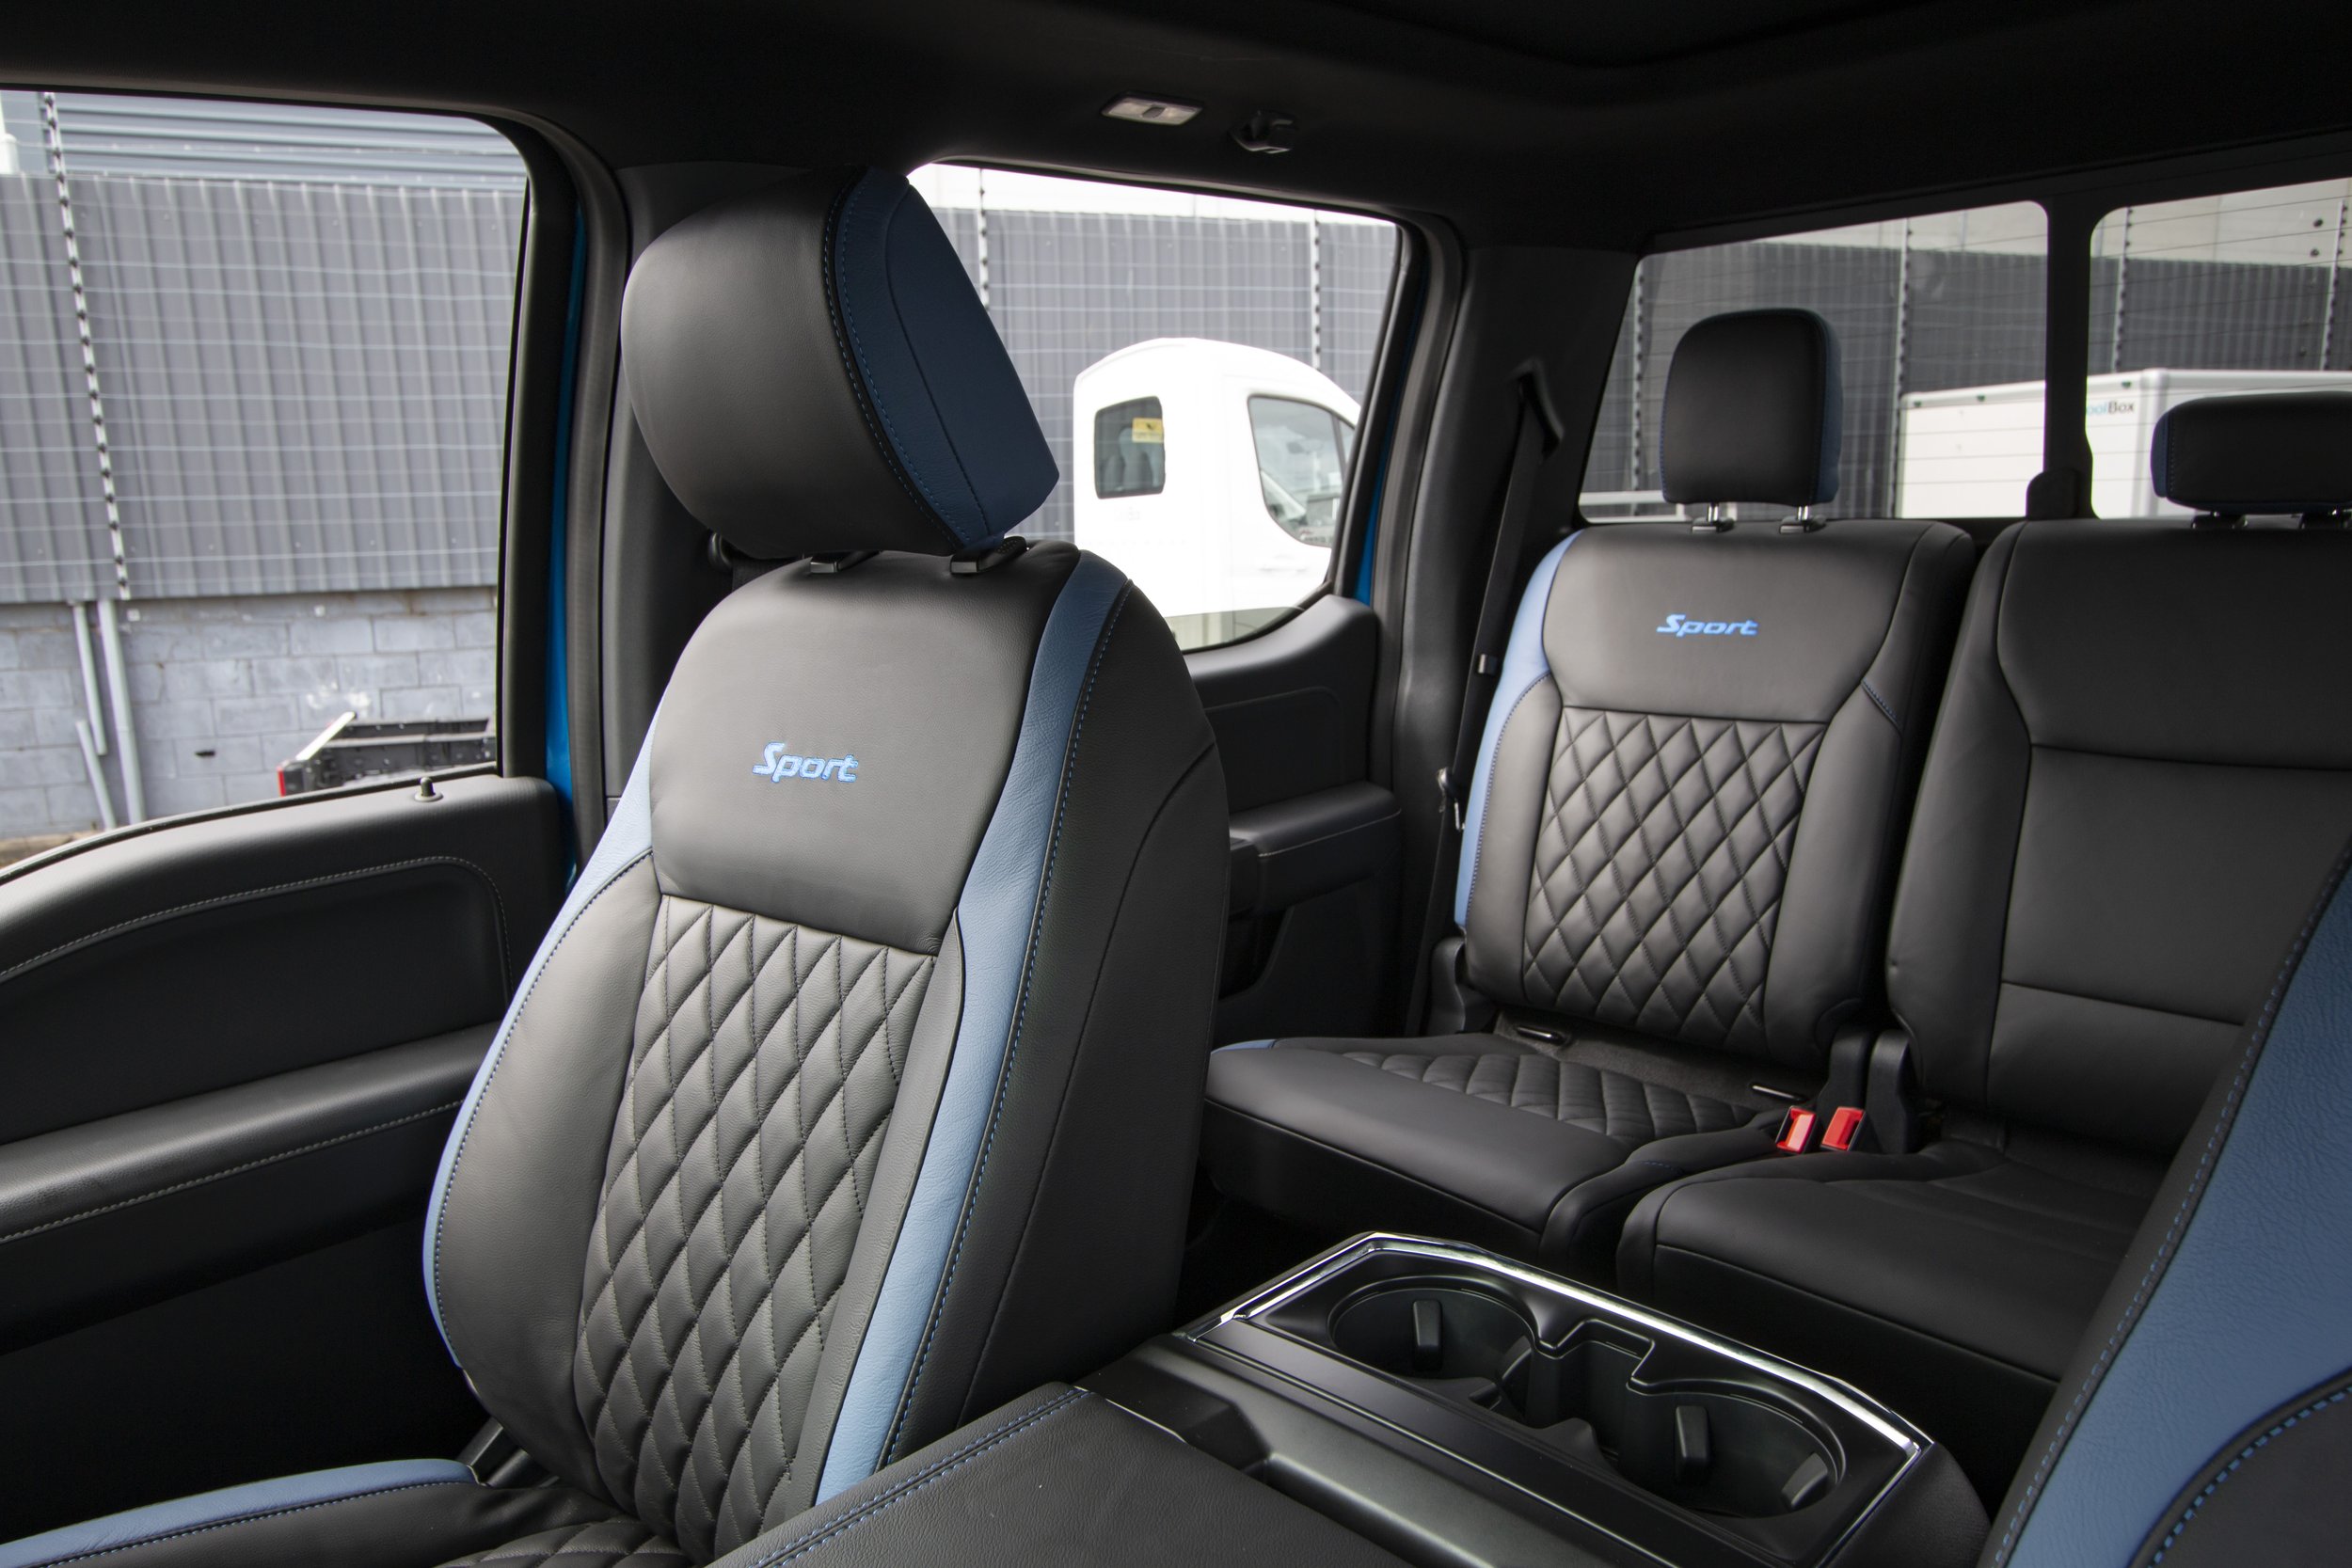 2022 Ford F-150 interior 7.jpg